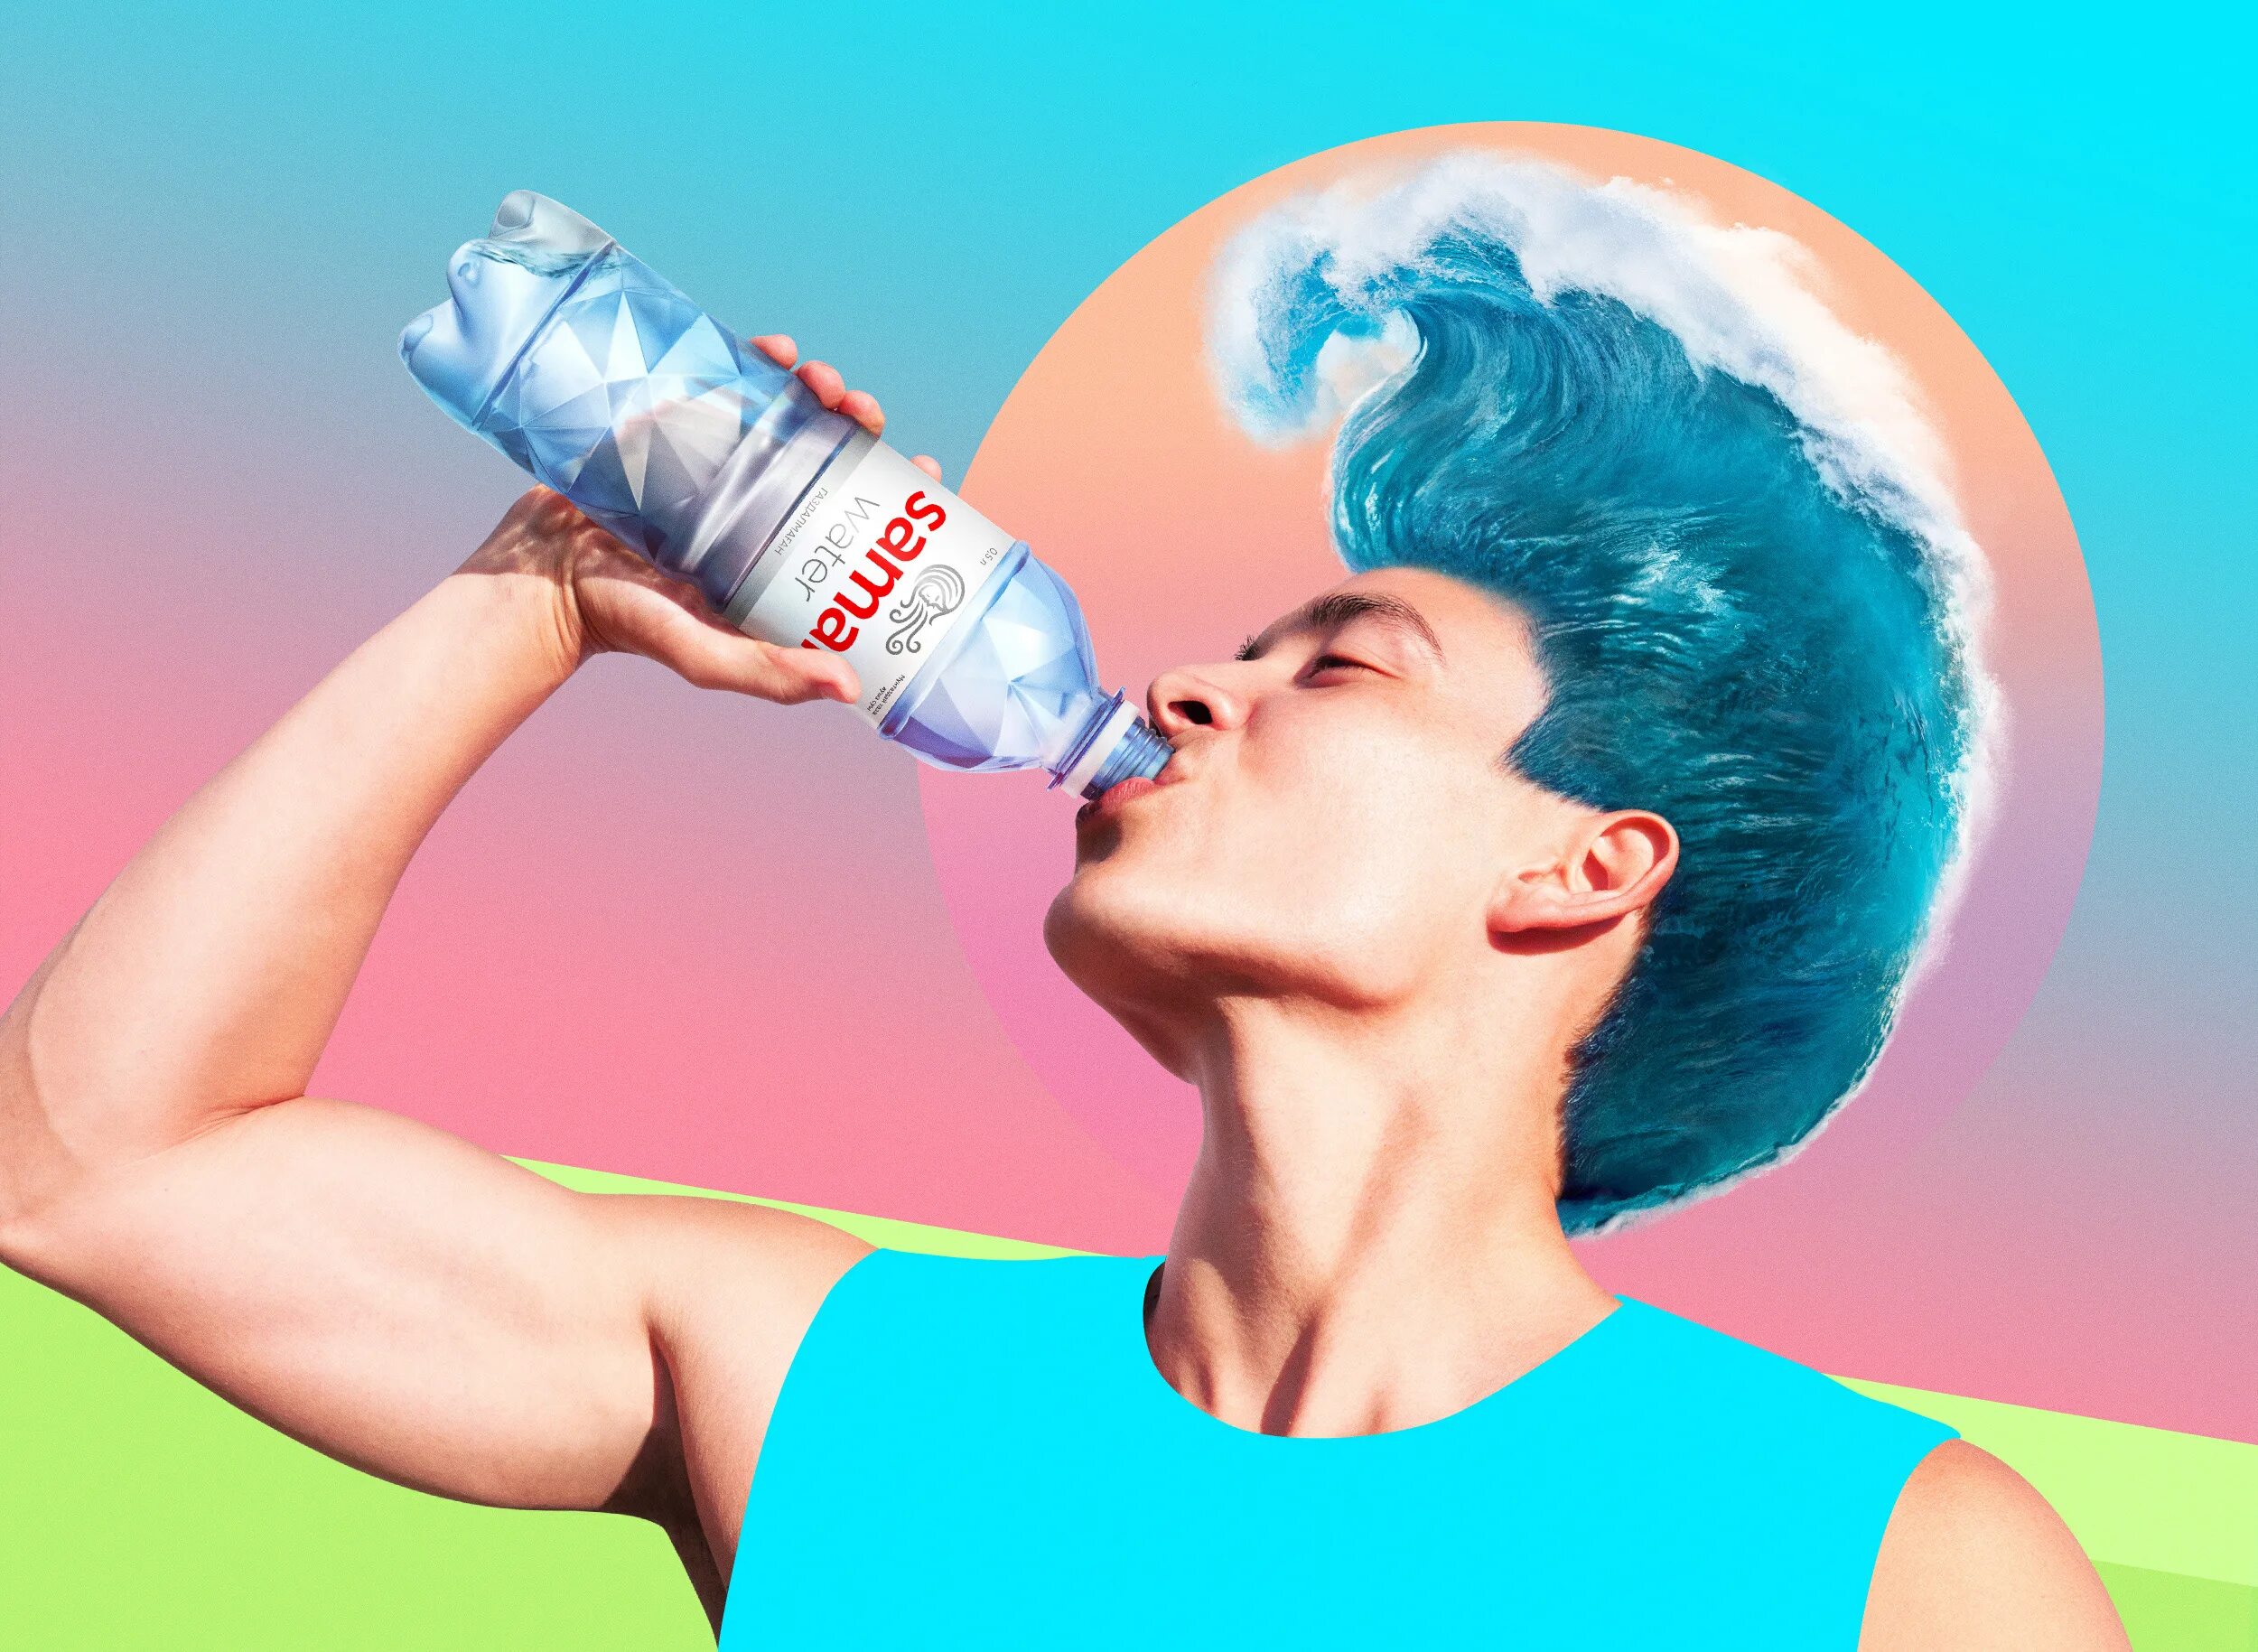 Спонсор воды. Реклама воды. Креативная реклама питьевой воды. Реклама минеральной воды. Реклама воды в бутылке.